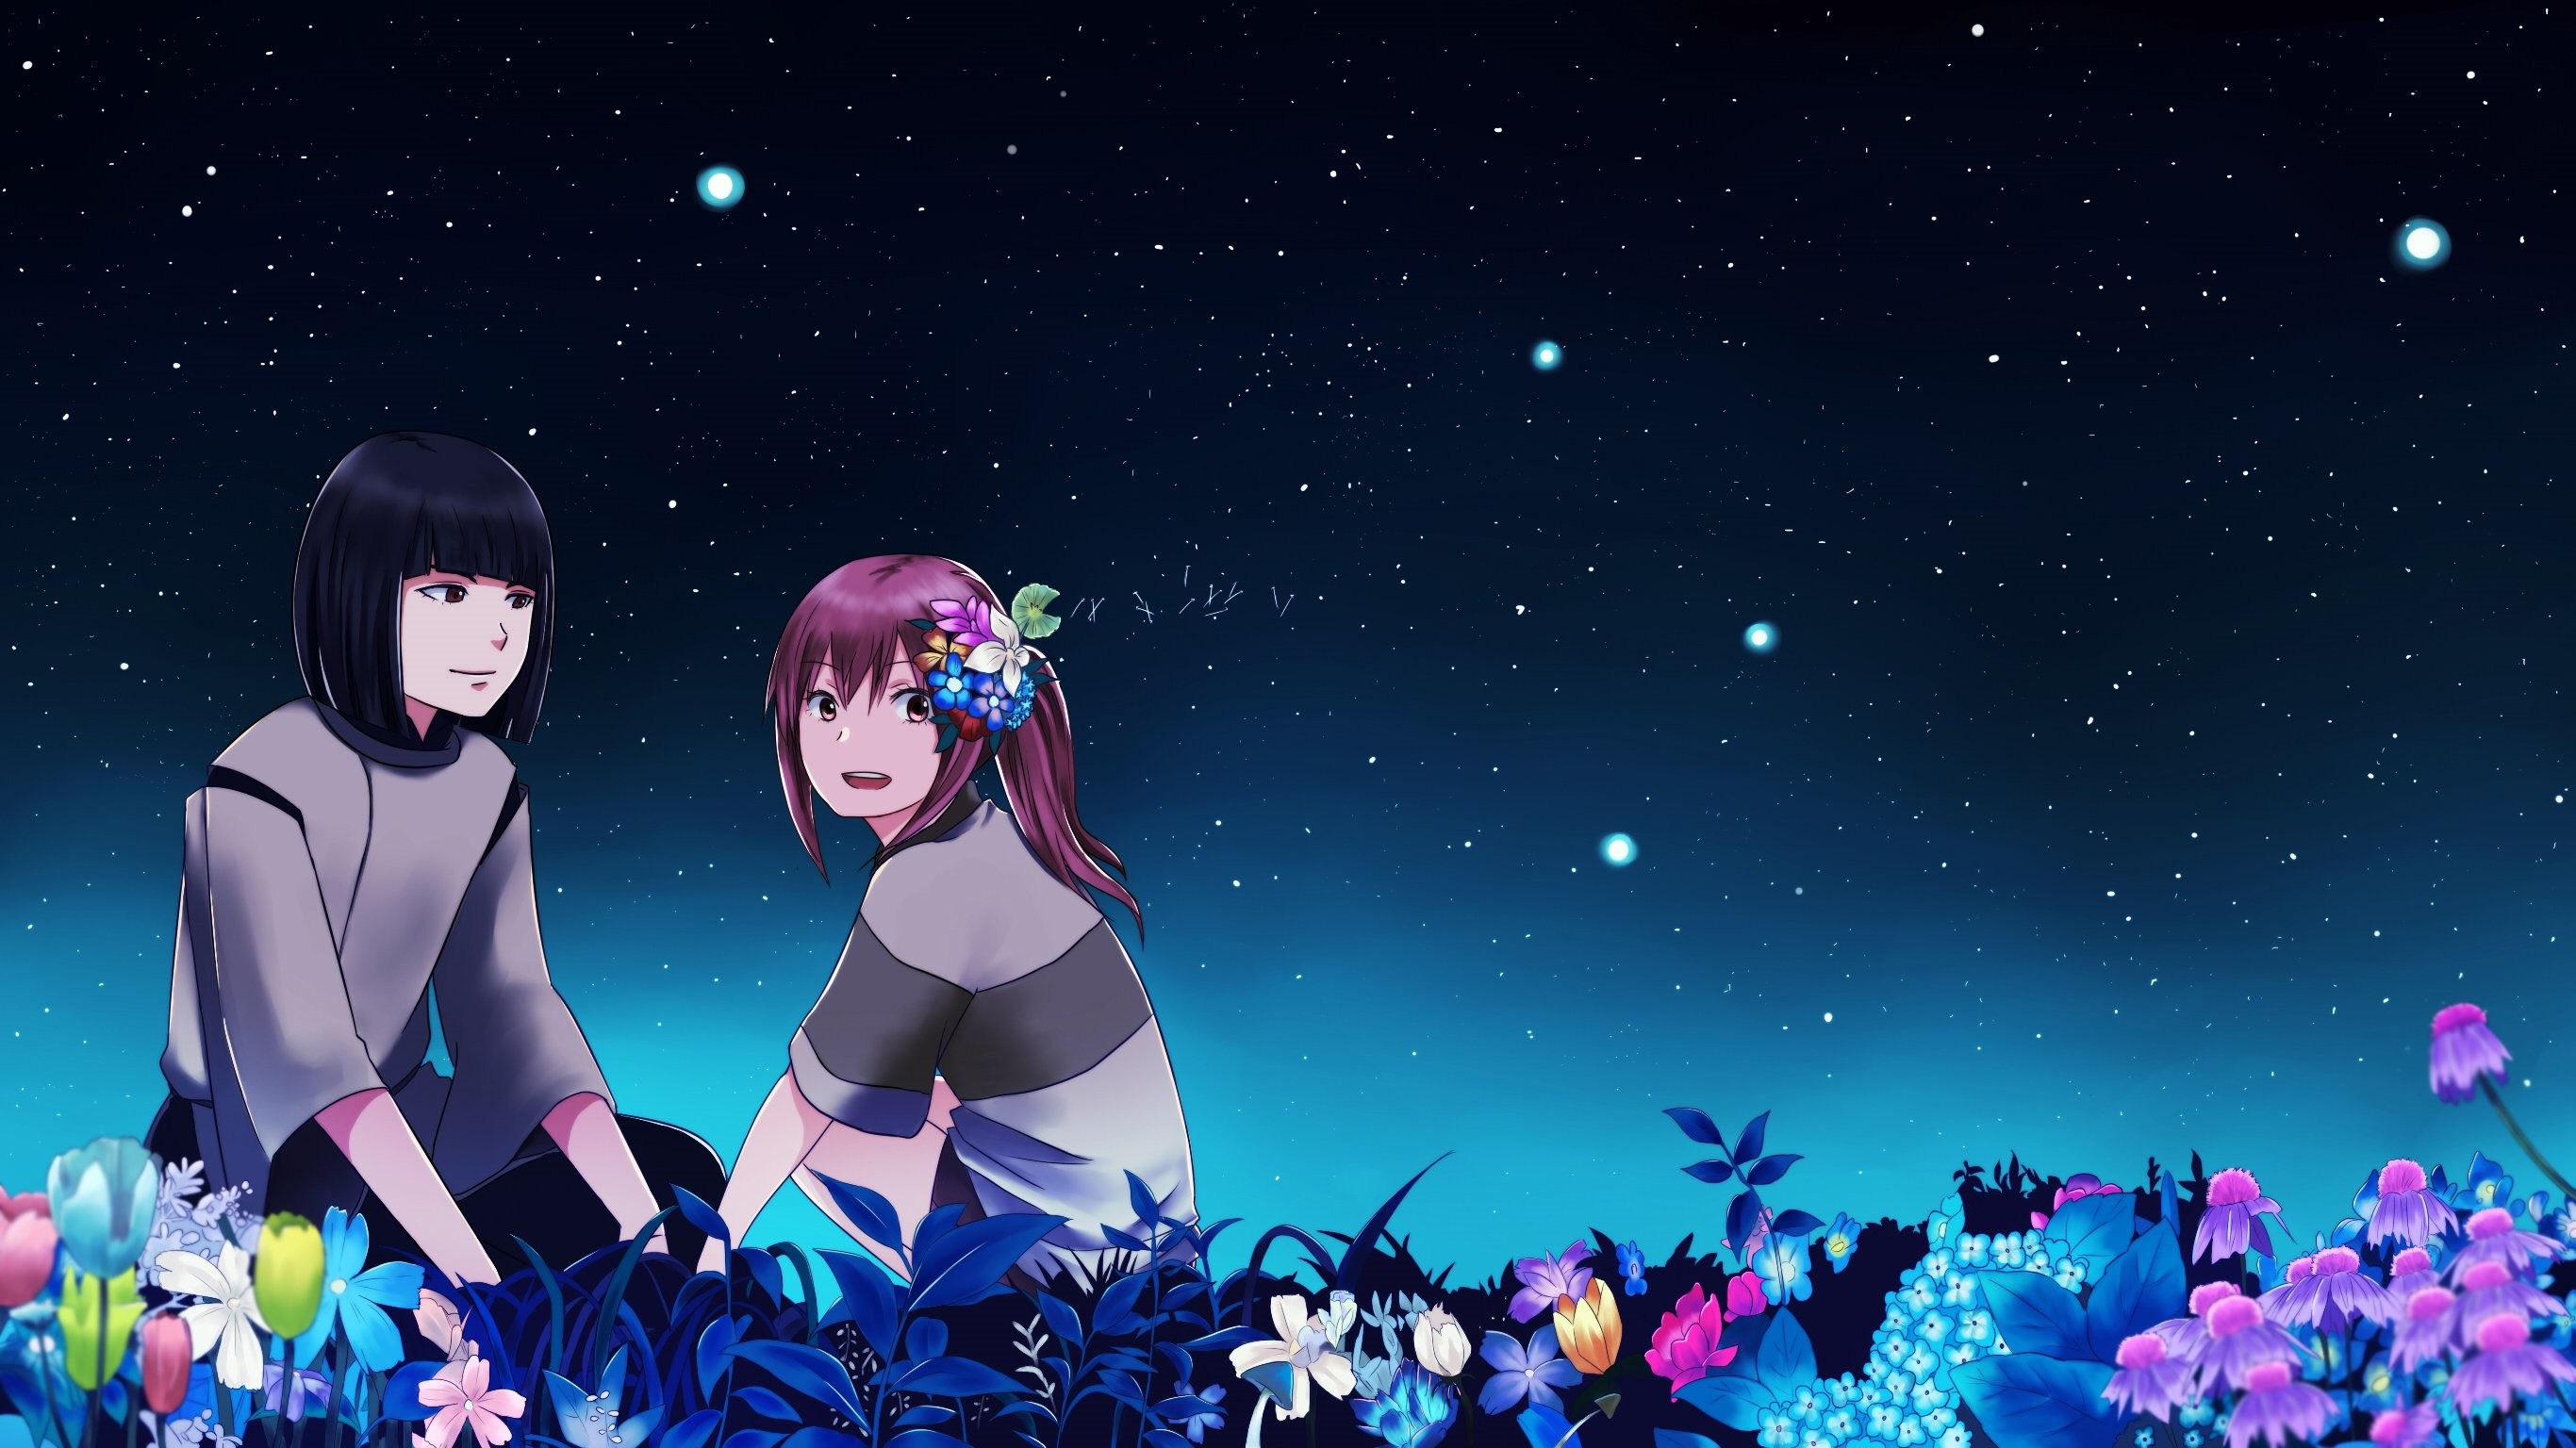 Flowers haku night ogino chihiro spirited away stars wallpaper 508711 WallpaperUP